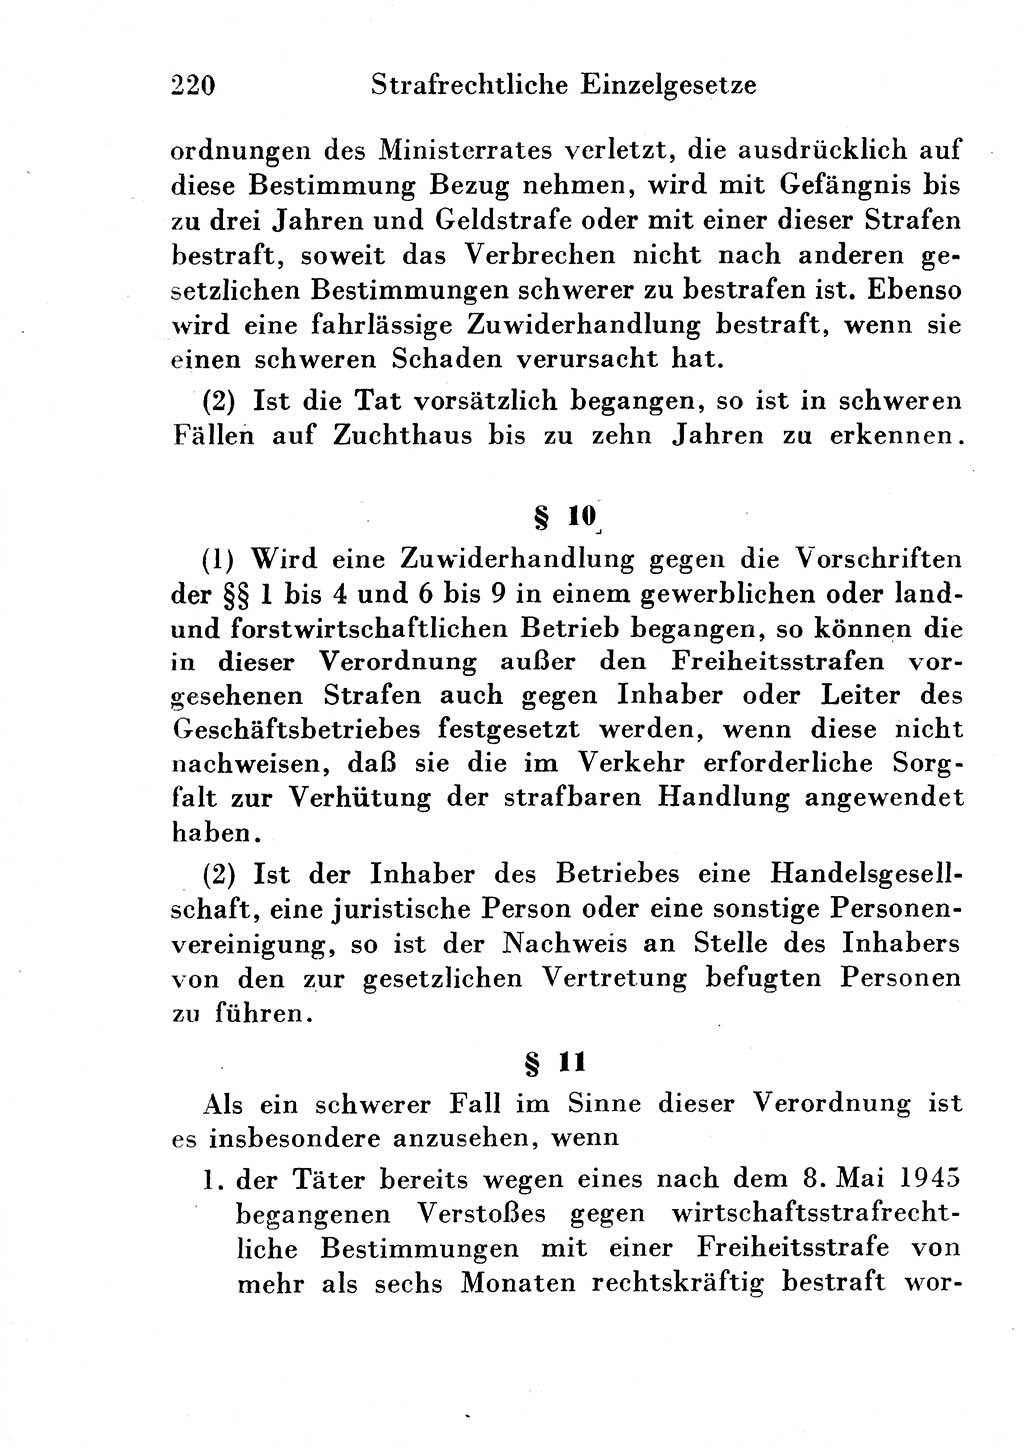 Strafgesetzbuch (StGB) und andere Strafgesetze [Deutsche Demokratische Republik (DDR)] 1954, Seite 220 (StGB Strafges. DDR 1954, S. 220)